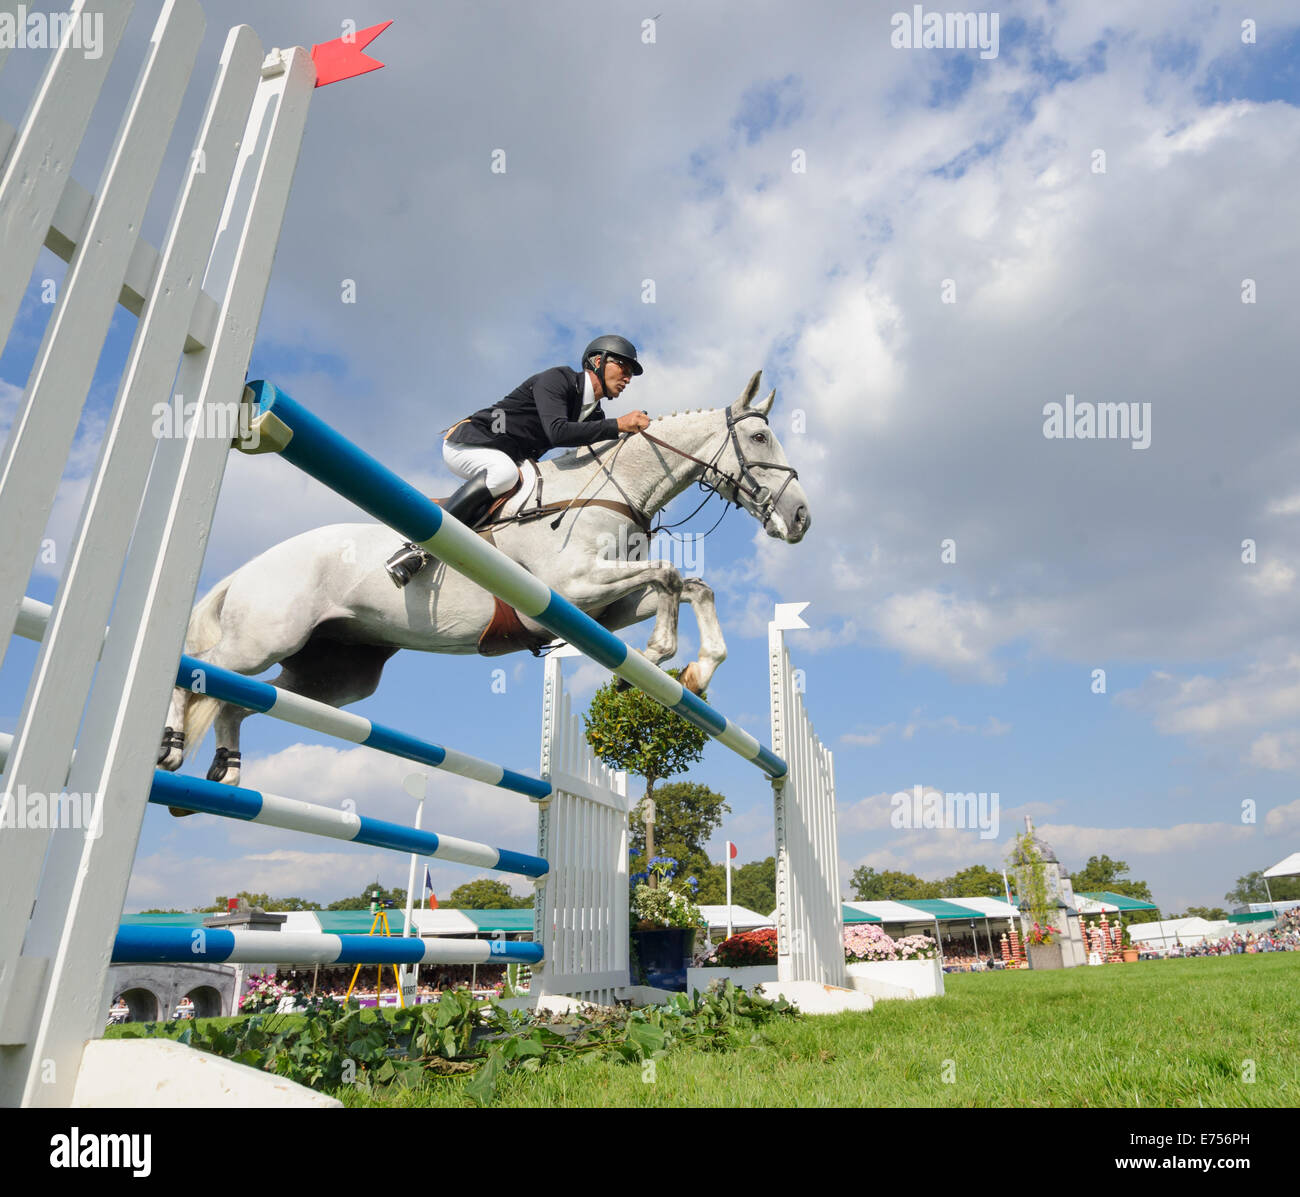 Burghley House, Stamford, au Royaume-Uni. Sep 7, 2014. Andrew Nicholson (NZL) et son cheval de saut d'Avebury - Vainqueur de la Land Rover Burghley Horse Trials, 7 septembre 2014. Credit : Nico Morgan/Alamy Live News Banque D'Images